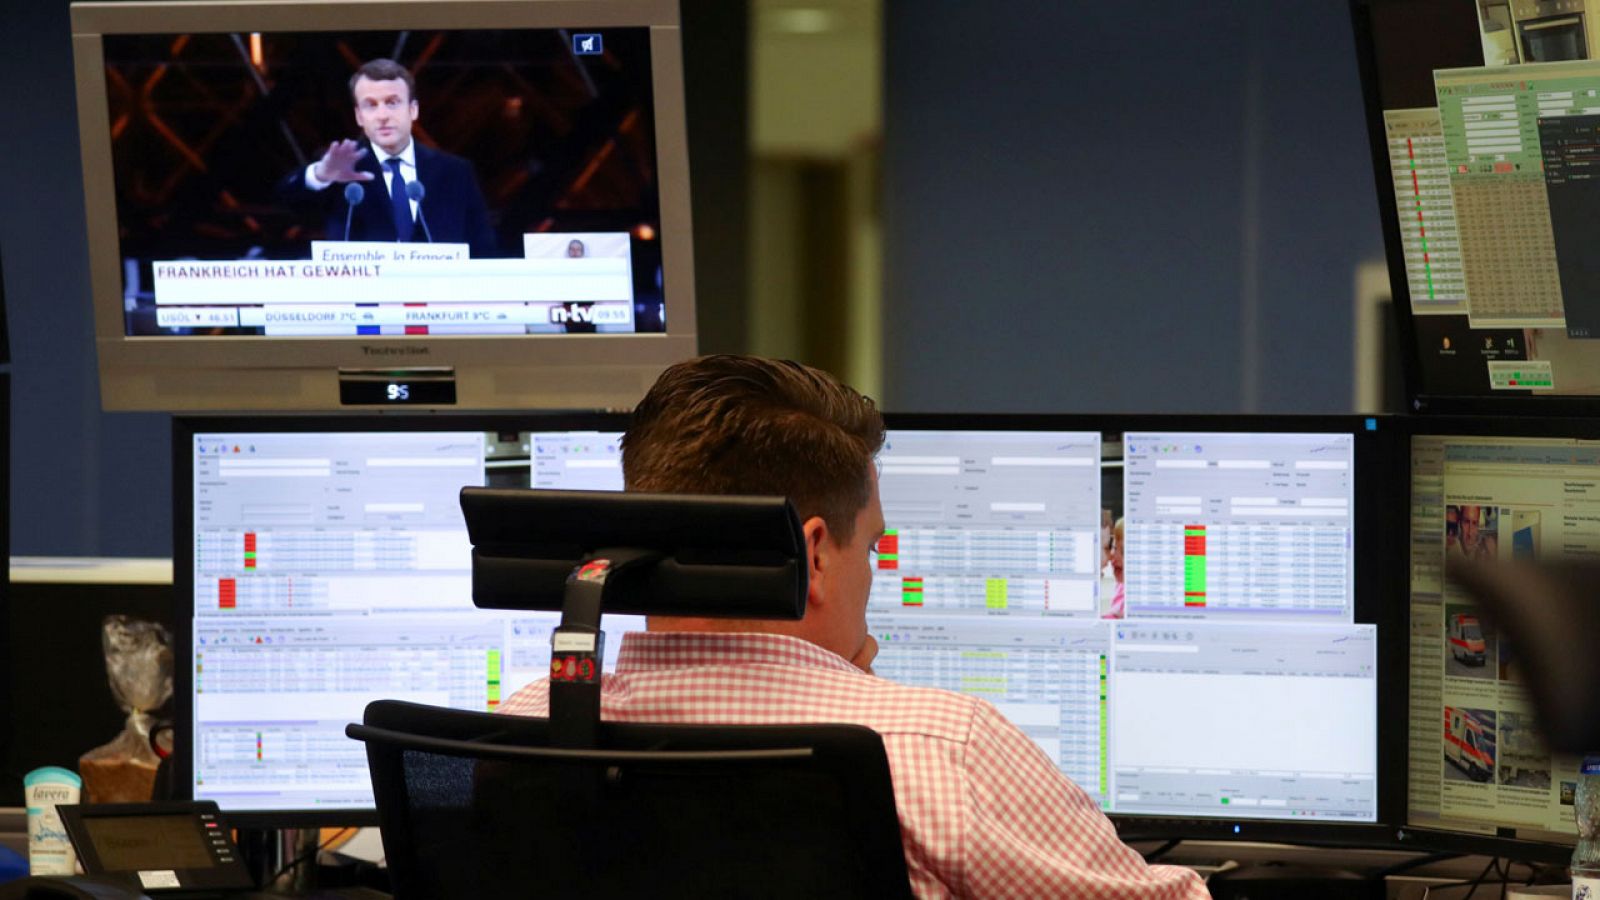 Un empleado trabaja en la Bolsa de Fráncfort mientras Macron aparece en un televisor